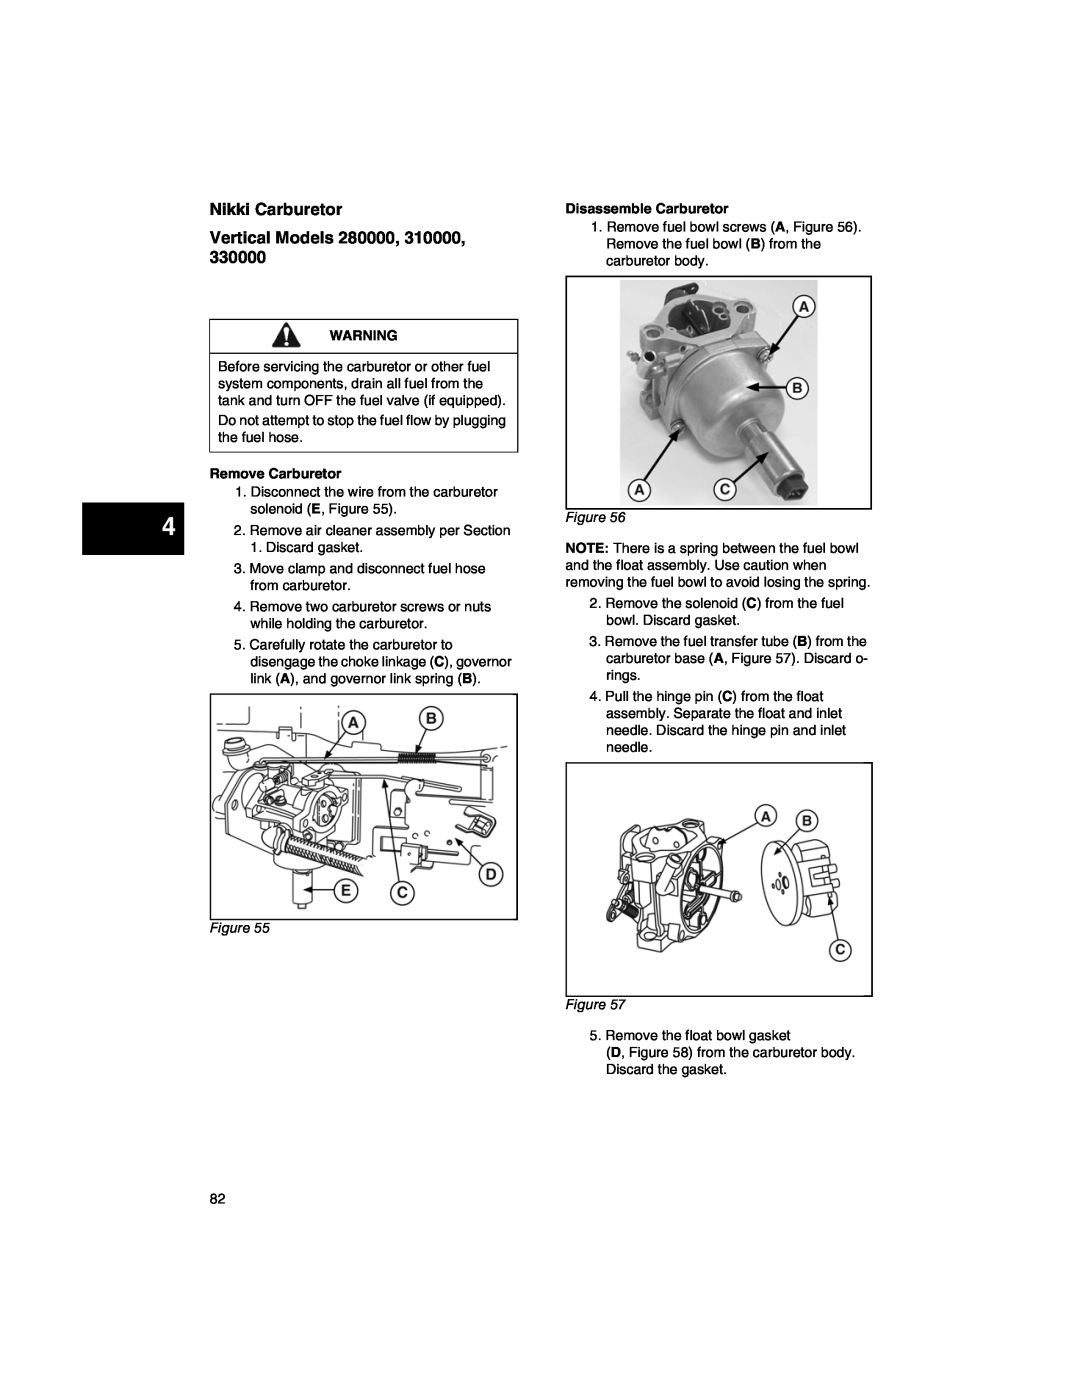 Briggs & Stratton 271172 manual Nikki Carburetor Vertical Models 280000, 310000, Remove Carburetor, Disassemble Carburetor 